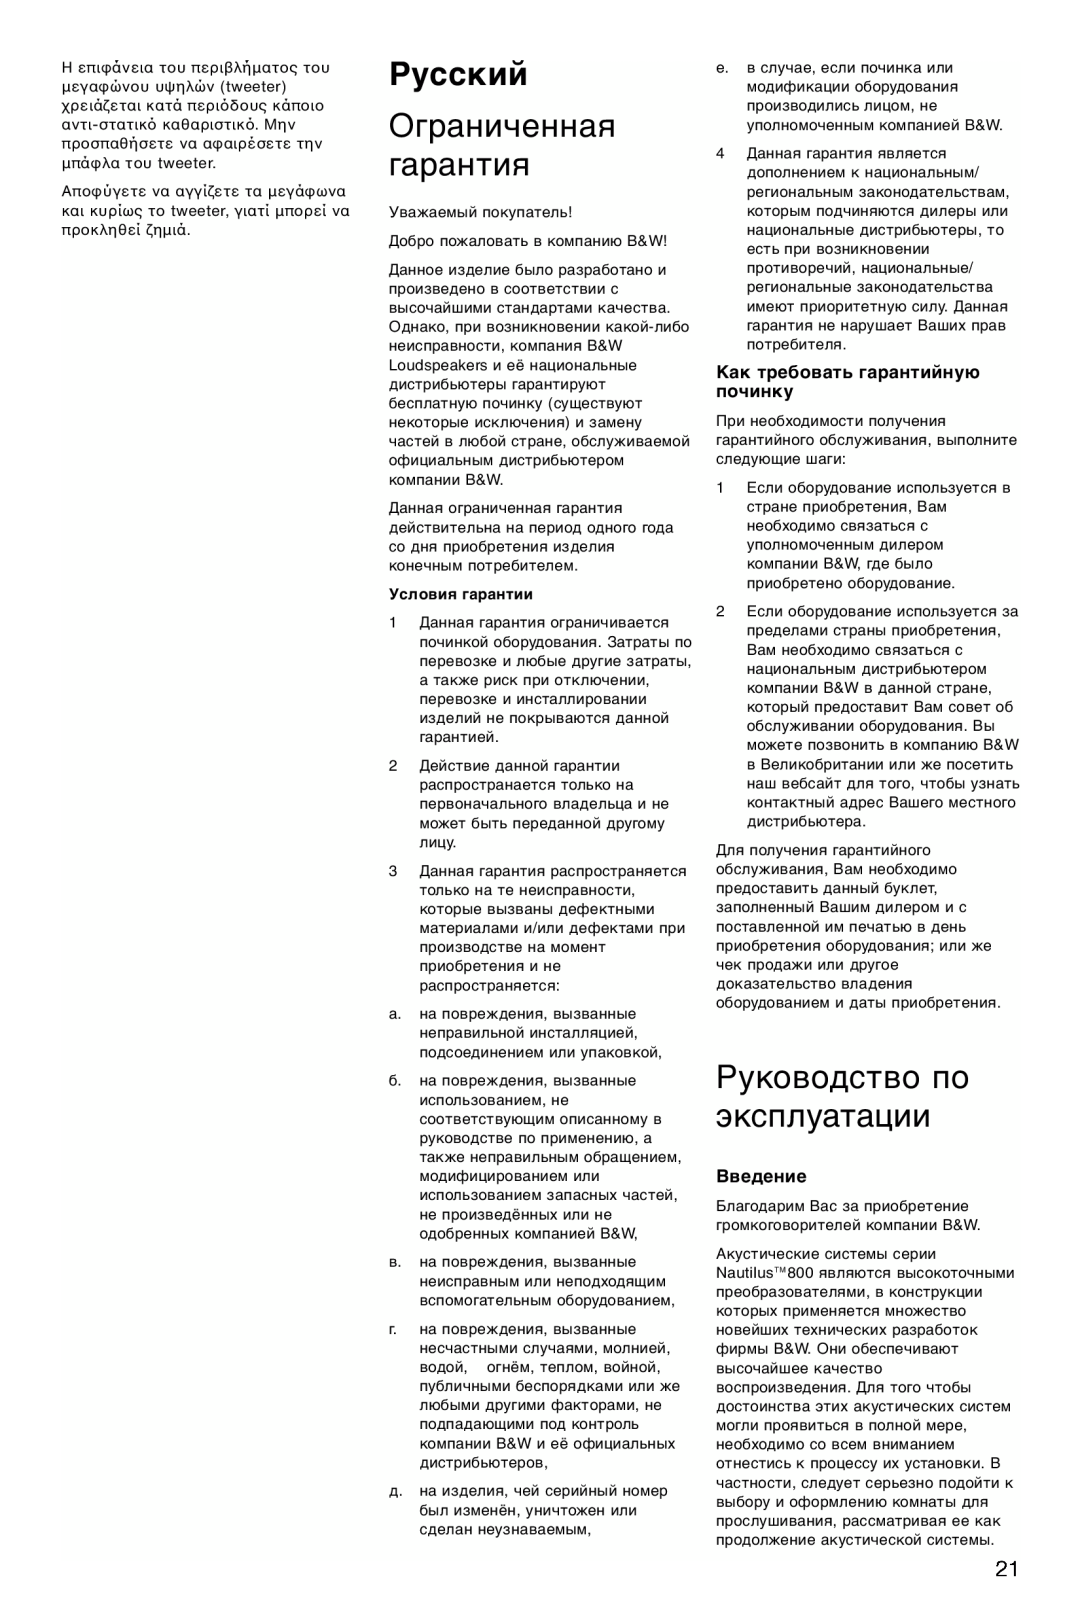 Bowers & Wilkins HTM1 Русский, Ограниченная гарантия, Руководство по эксплуатации, Как требовать гарантийную починку 